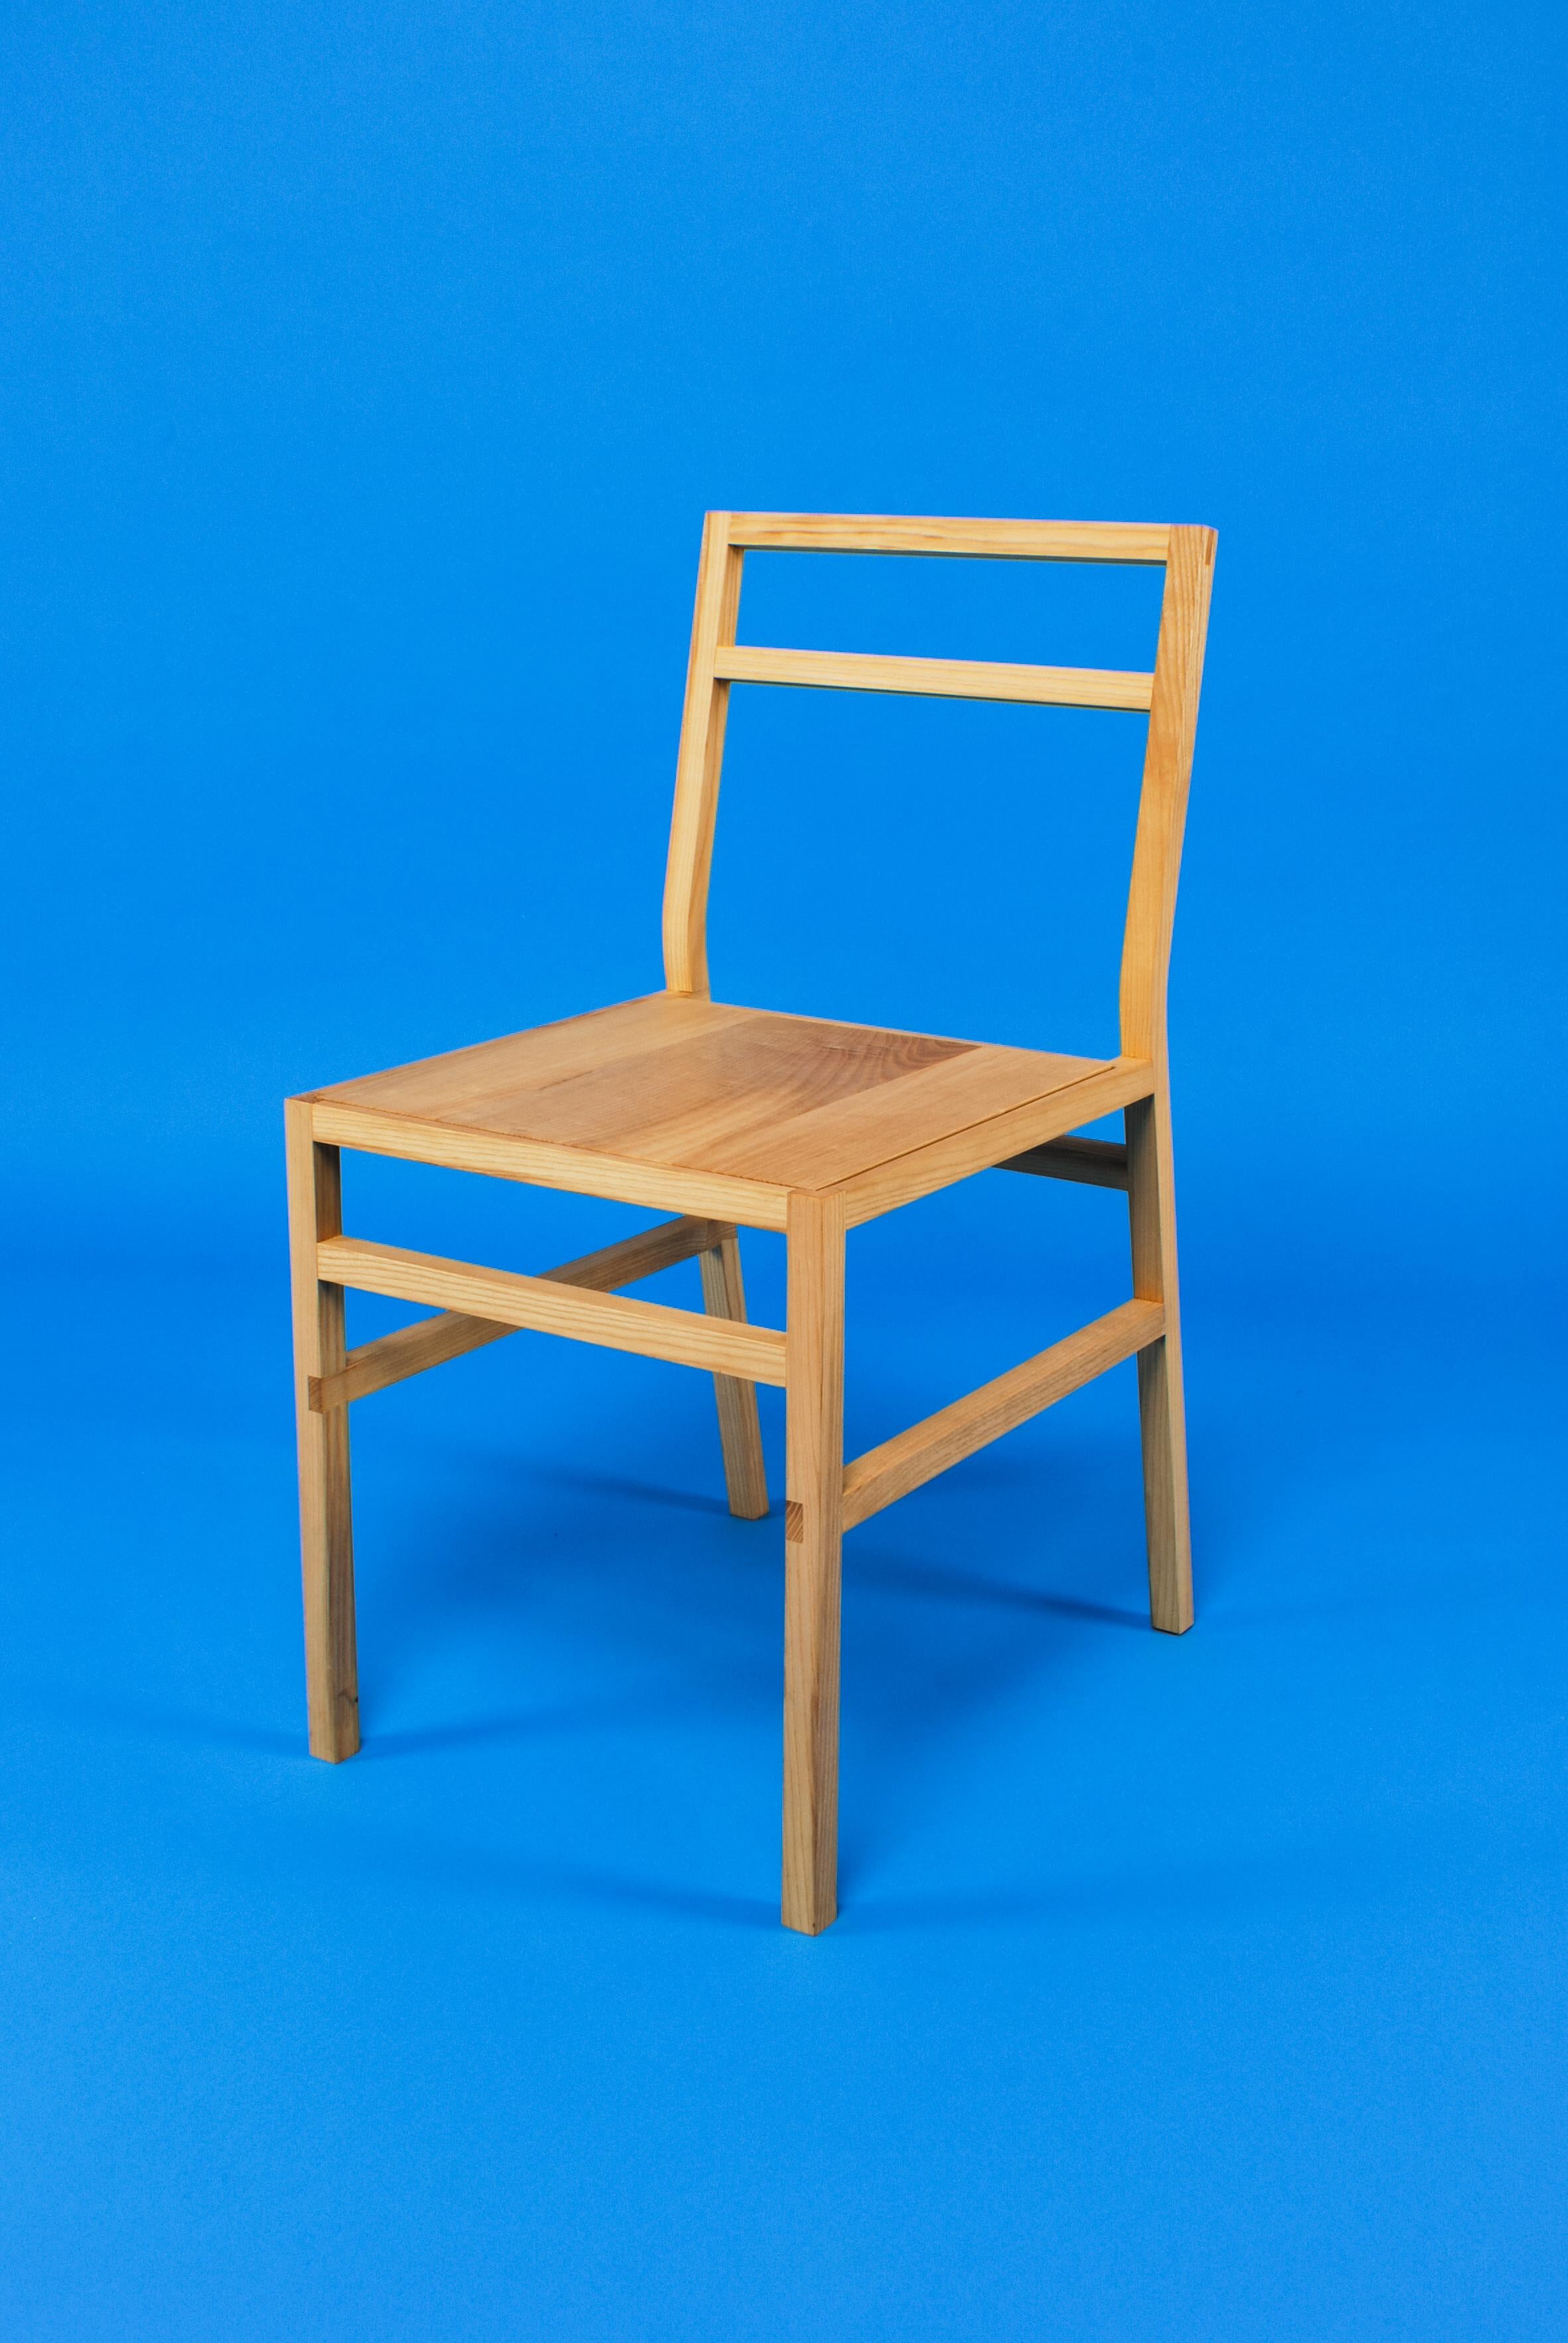 Chaise de salle à manger Organic Modern. Créé par Loose Fit et fabriqué à la main sur commande au Royaume-Uni. Disponible dans un choix de trois essences - chêne anglais, frêne ou London Plane.

Chaise de salle à manger en frêne simple. D'apparence